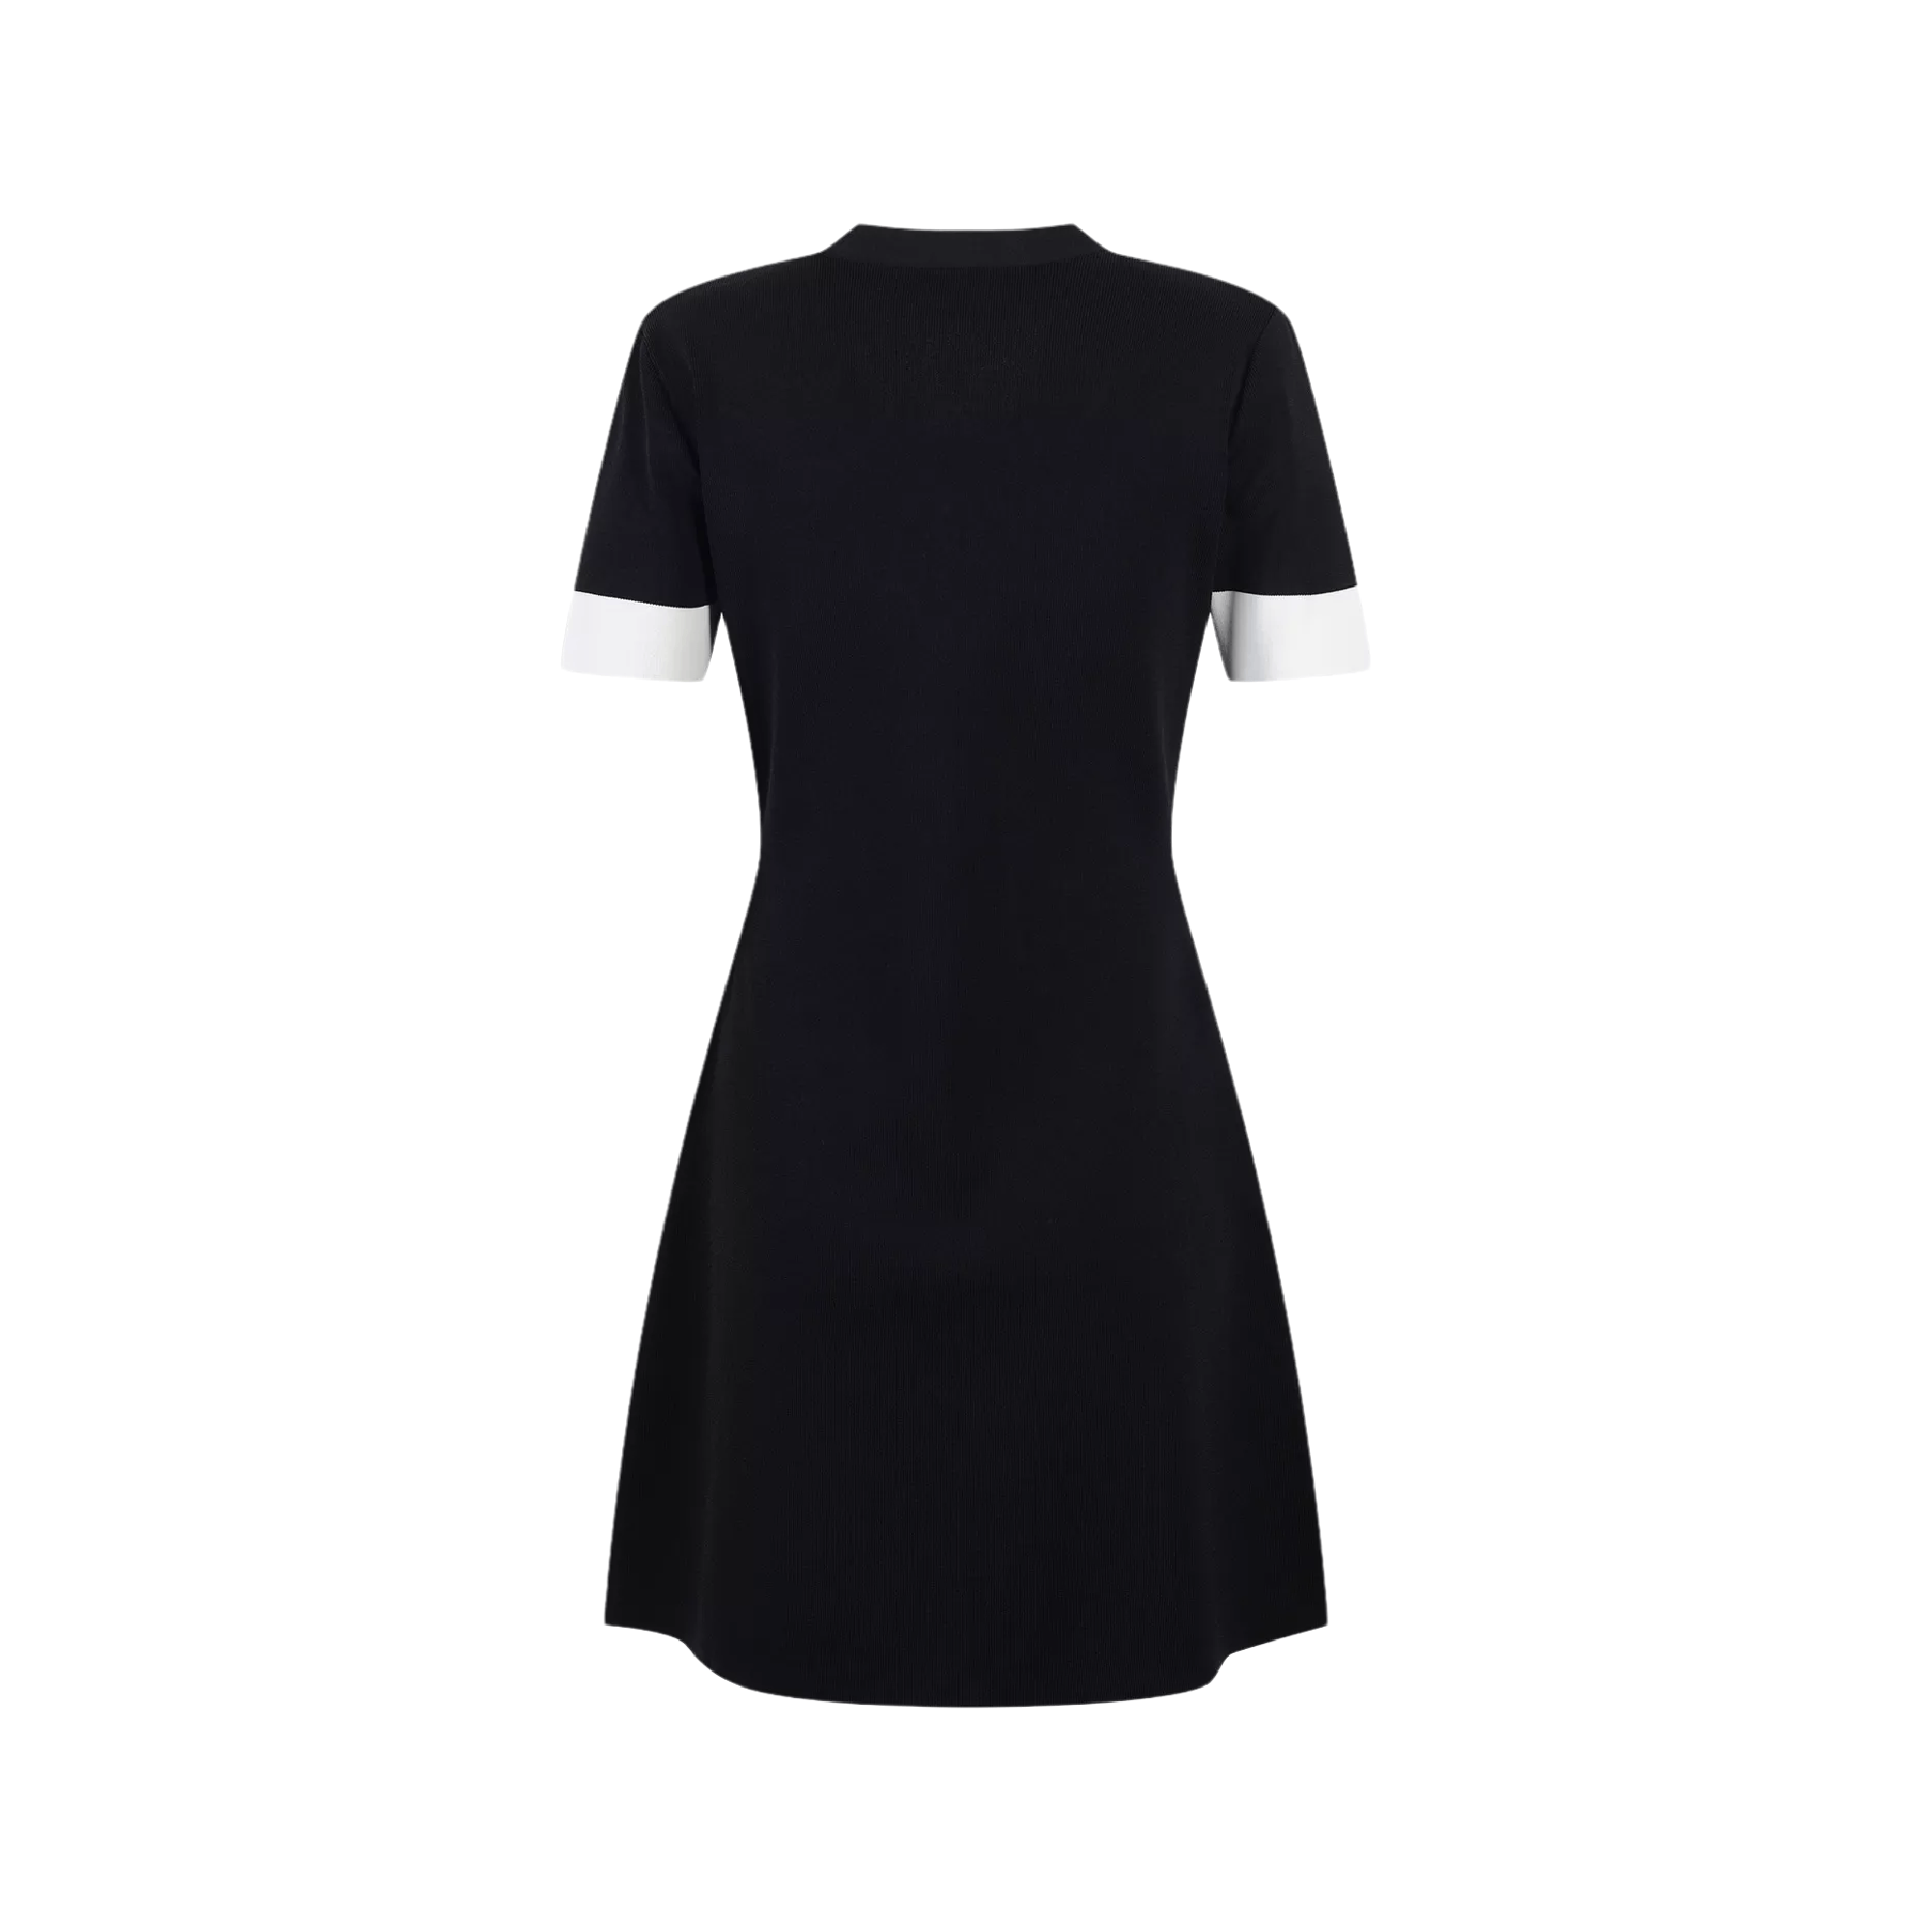 Bowknot detail black mini dress - itsy, it‘s different